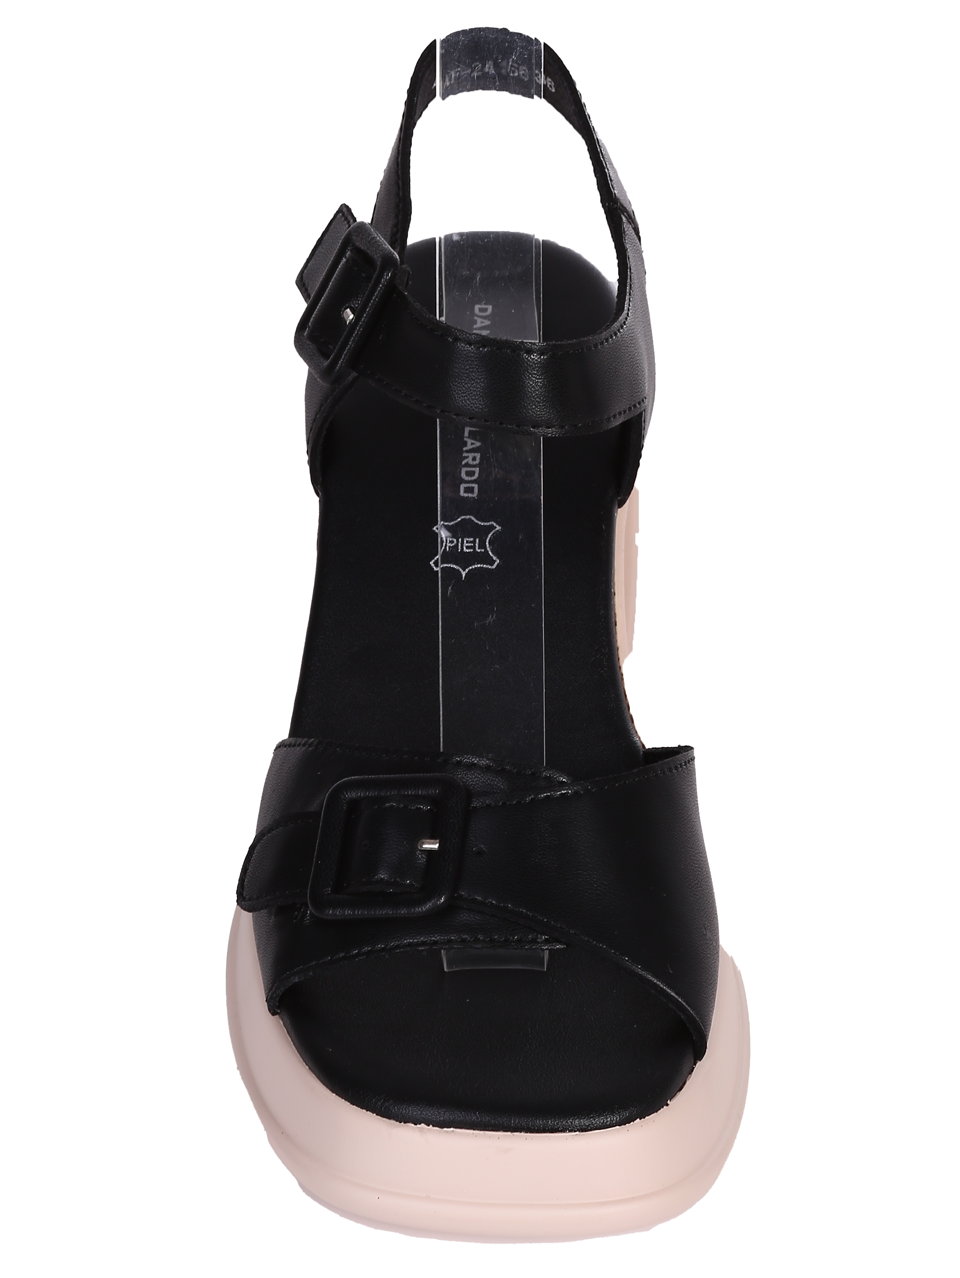 Ежедневни дамски сандали на ток в черен/бежов цвят 4AF-24166 black/beige